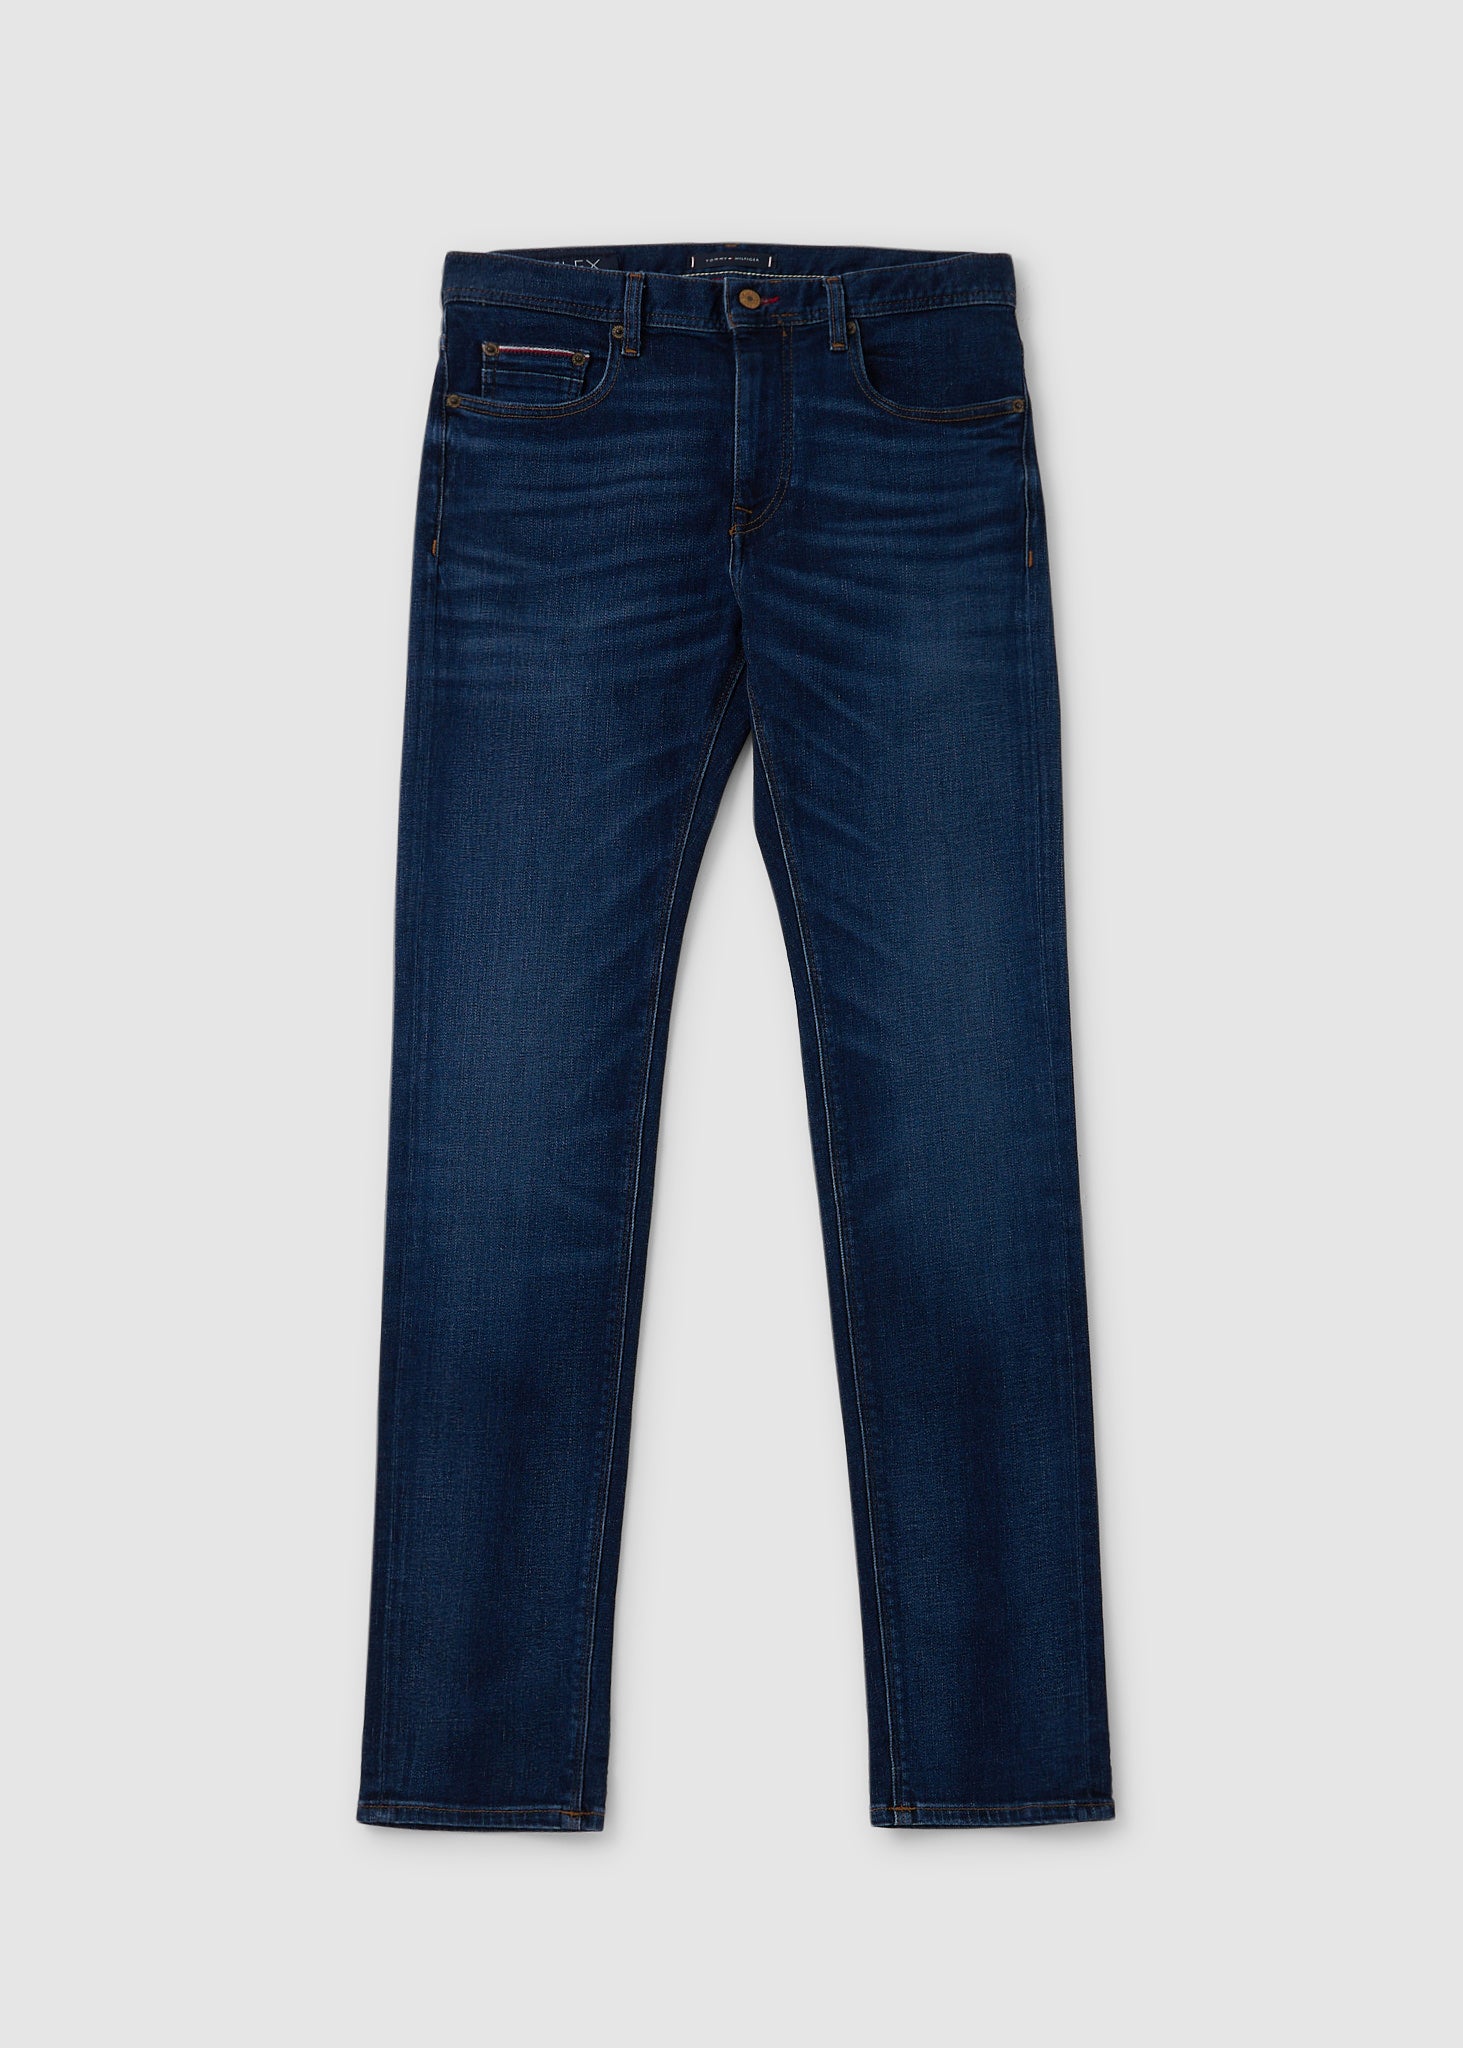 Image of Tommy Hilfiger Mens Bleecker PSTR Jeans In Hyder Blue